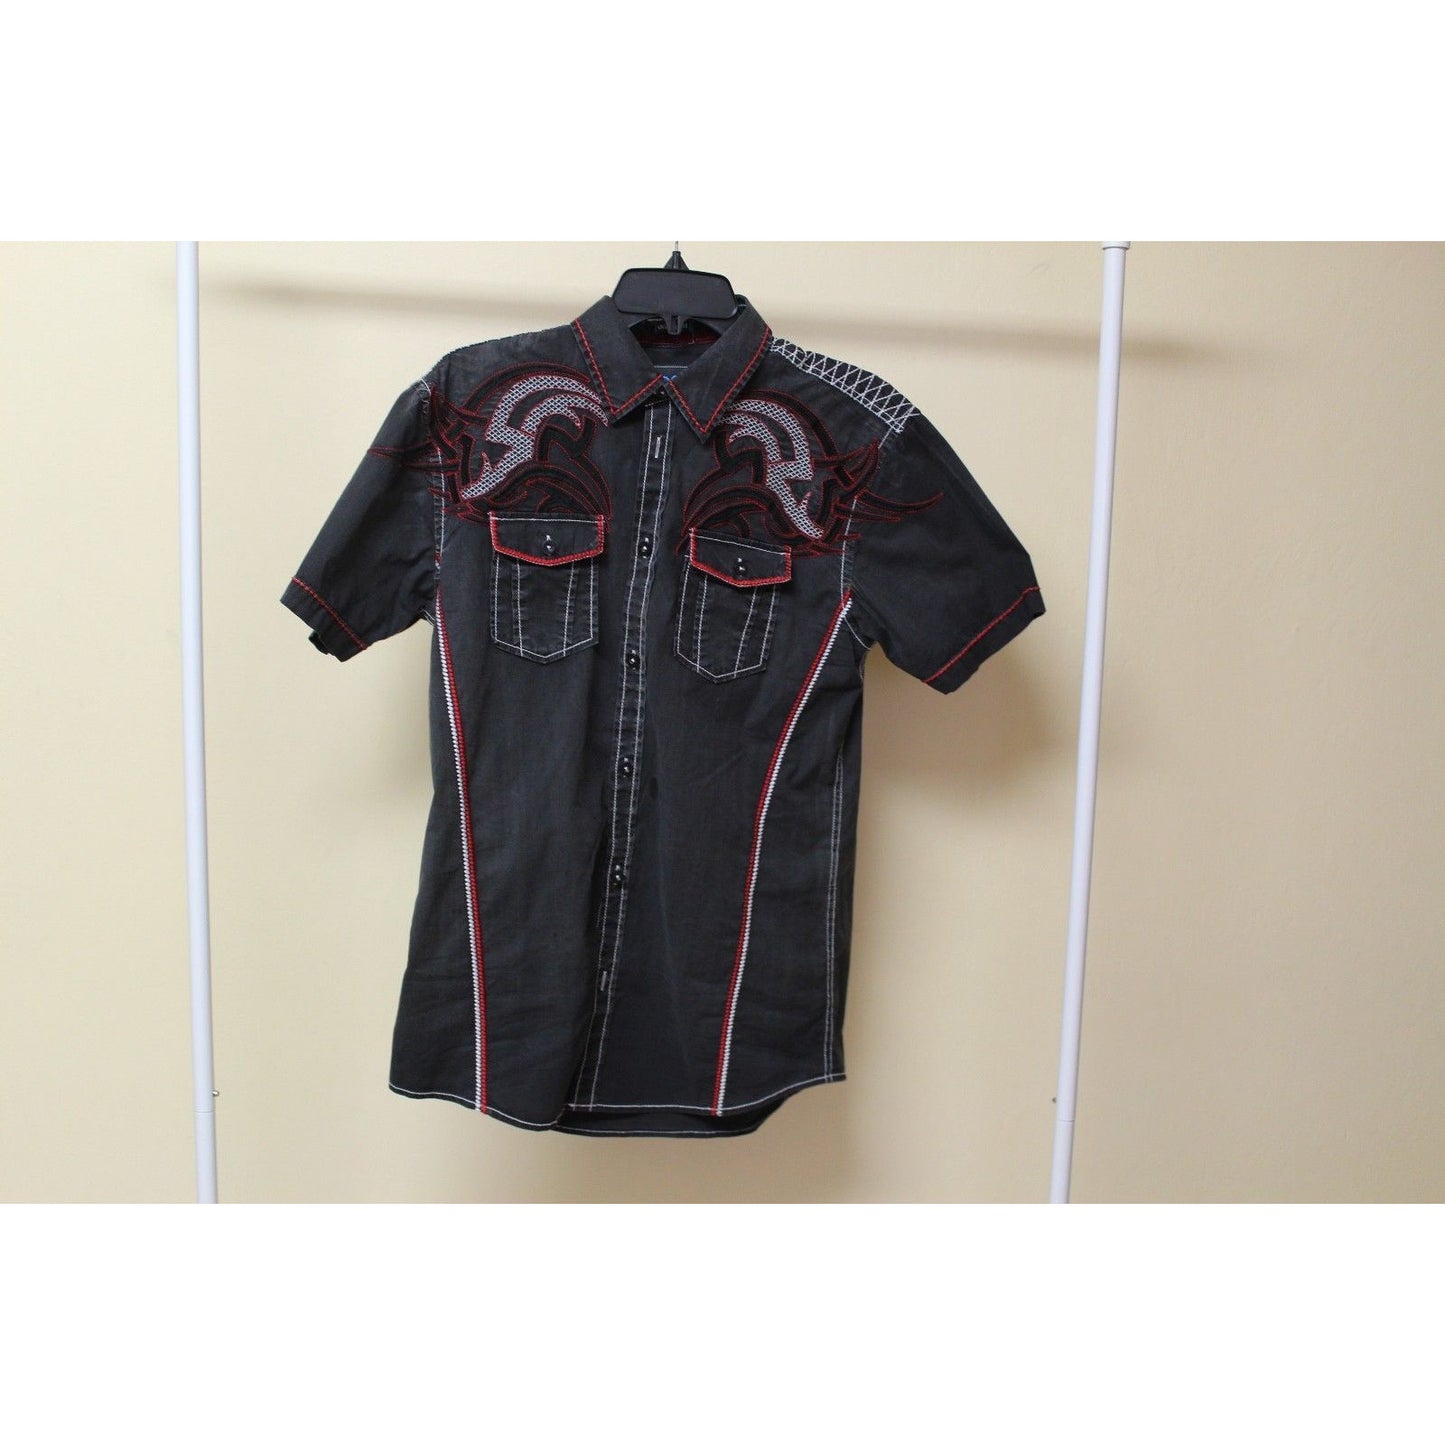 Men's Roar Signature Black Short Sleeve Button Up Shirt Size Medium